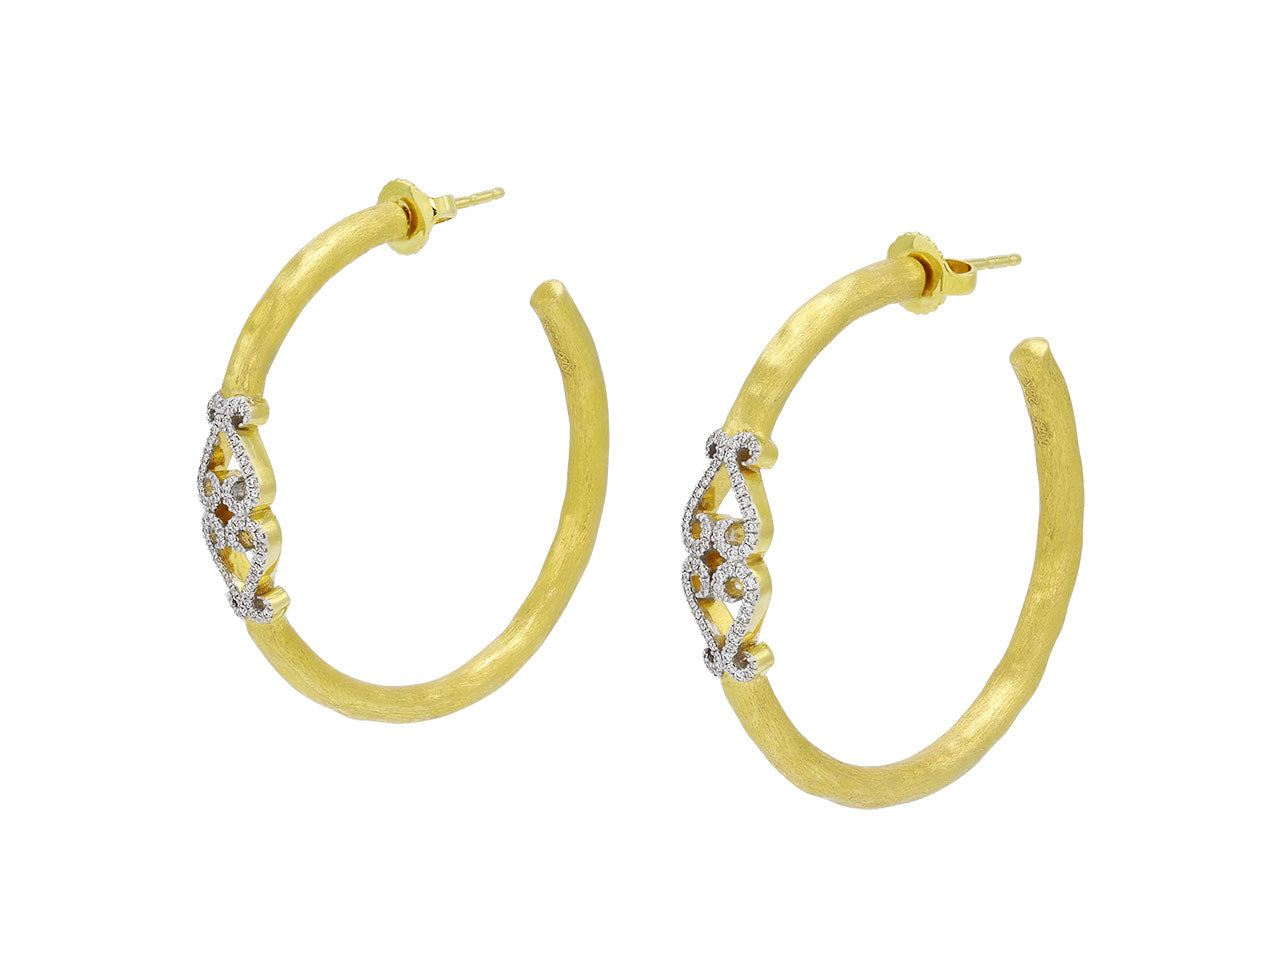 Rhonda Faber Green Diamond Double-Heart Hoop Earrings in 22K Gold, Large